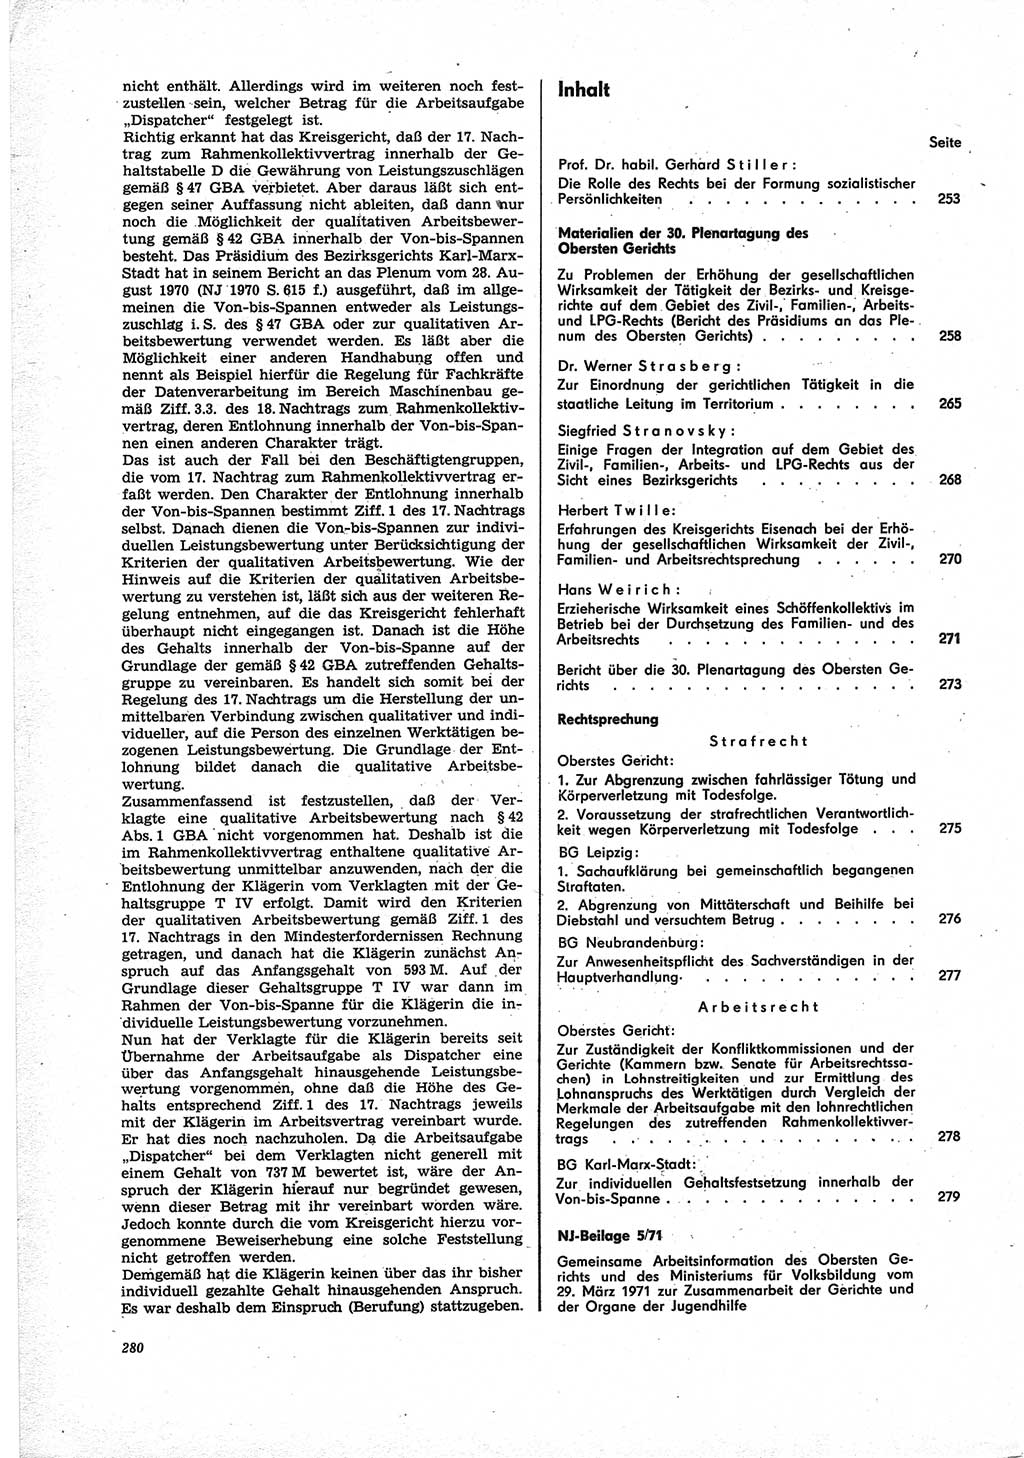 Neue Justiz (NJ), Zeitschrift für Recht und Rechtswissenschaft [Deutsche Demokratische Republik (DDR)], 25. Jahrgang 1971, Seite 280 (NJ DDR 1971, S. 280)